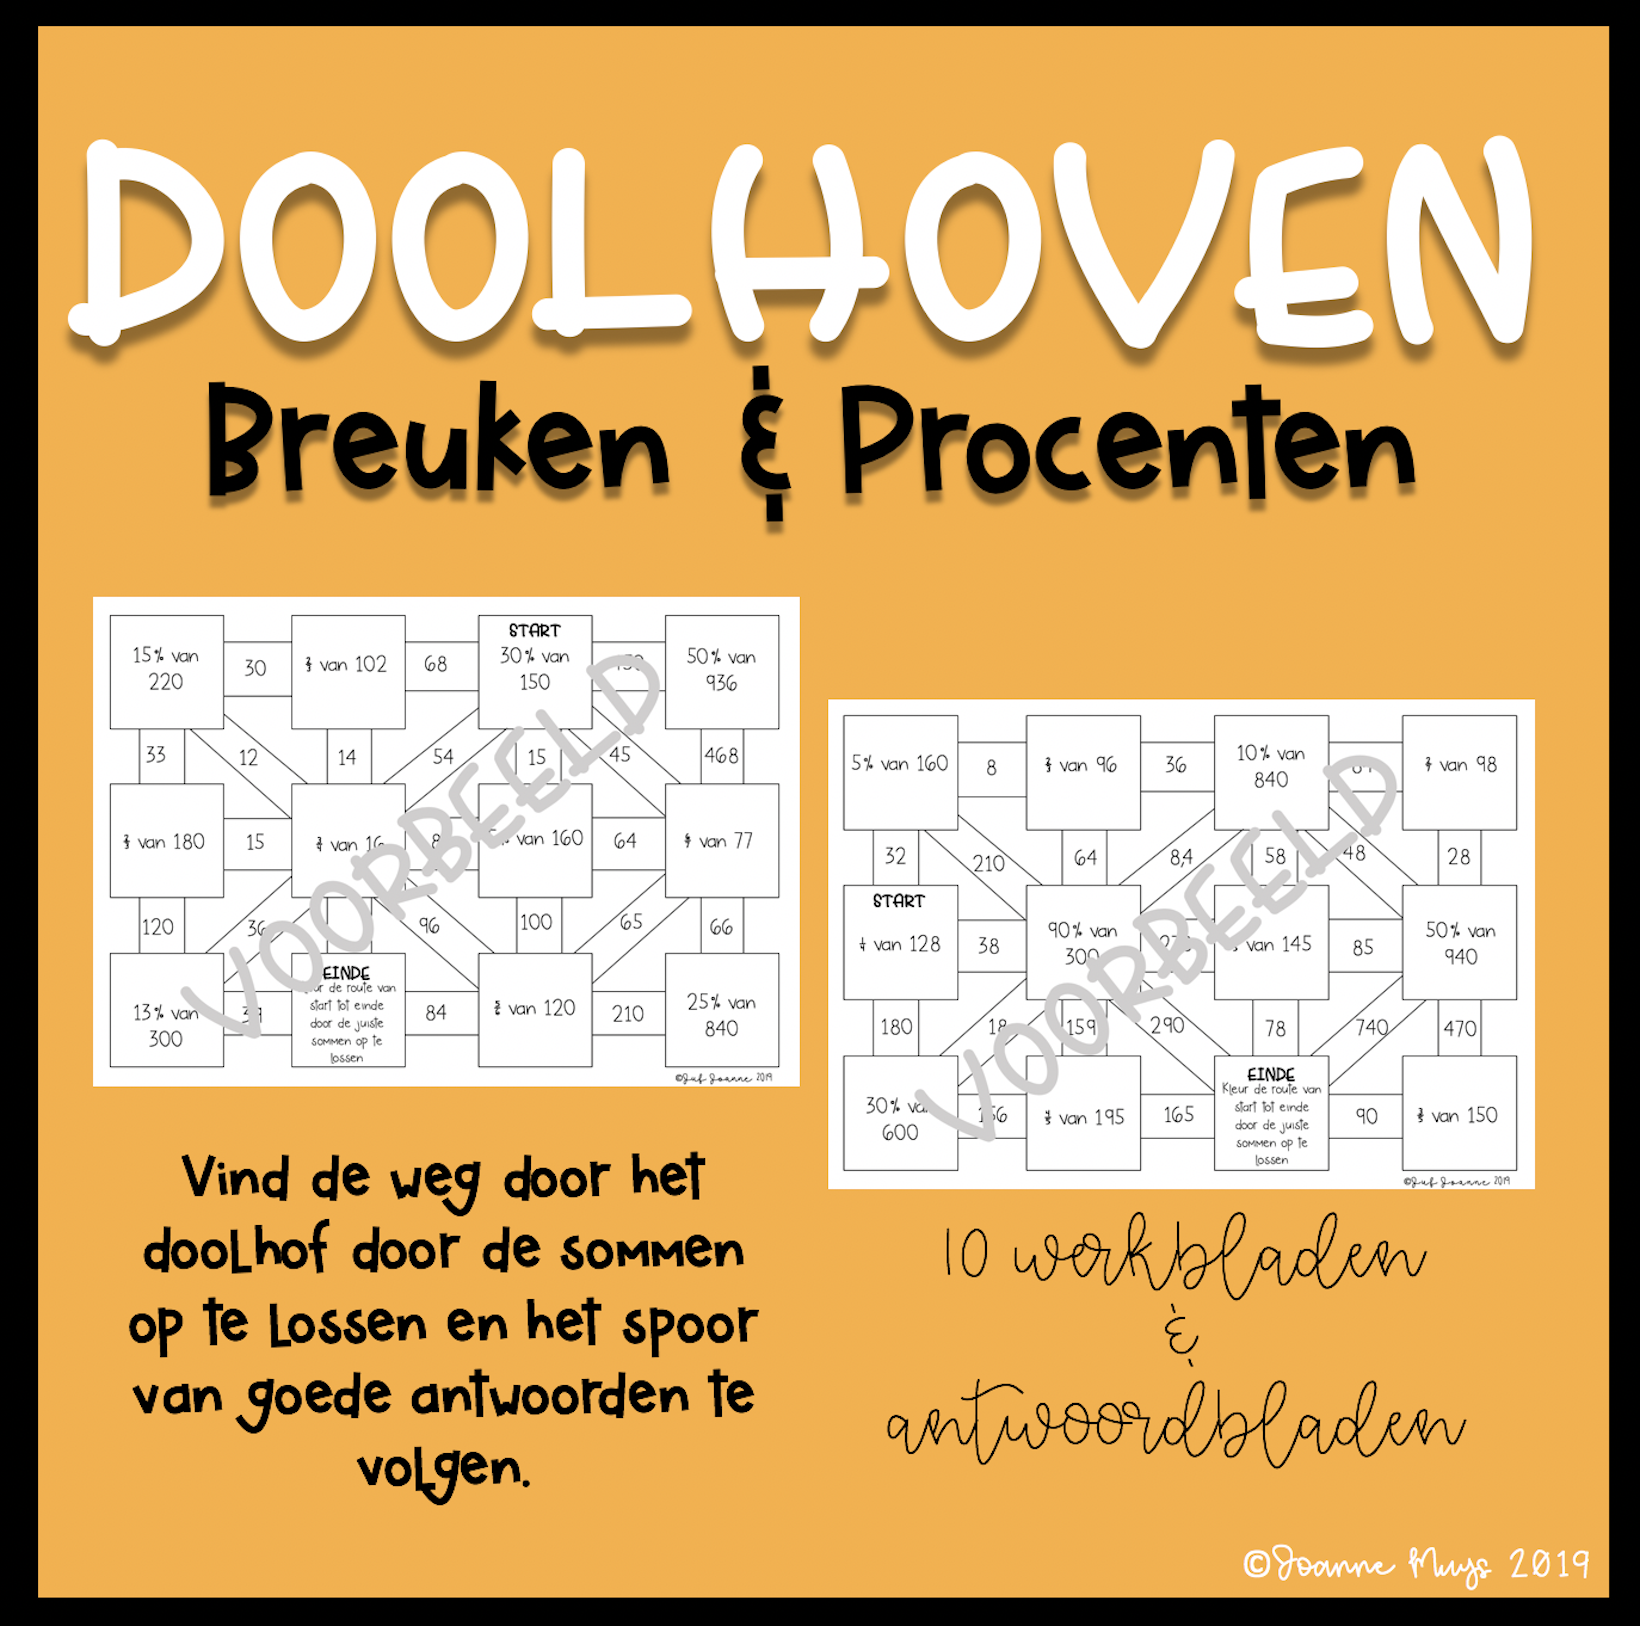 breuken-en-procenten-doolhoven-cover